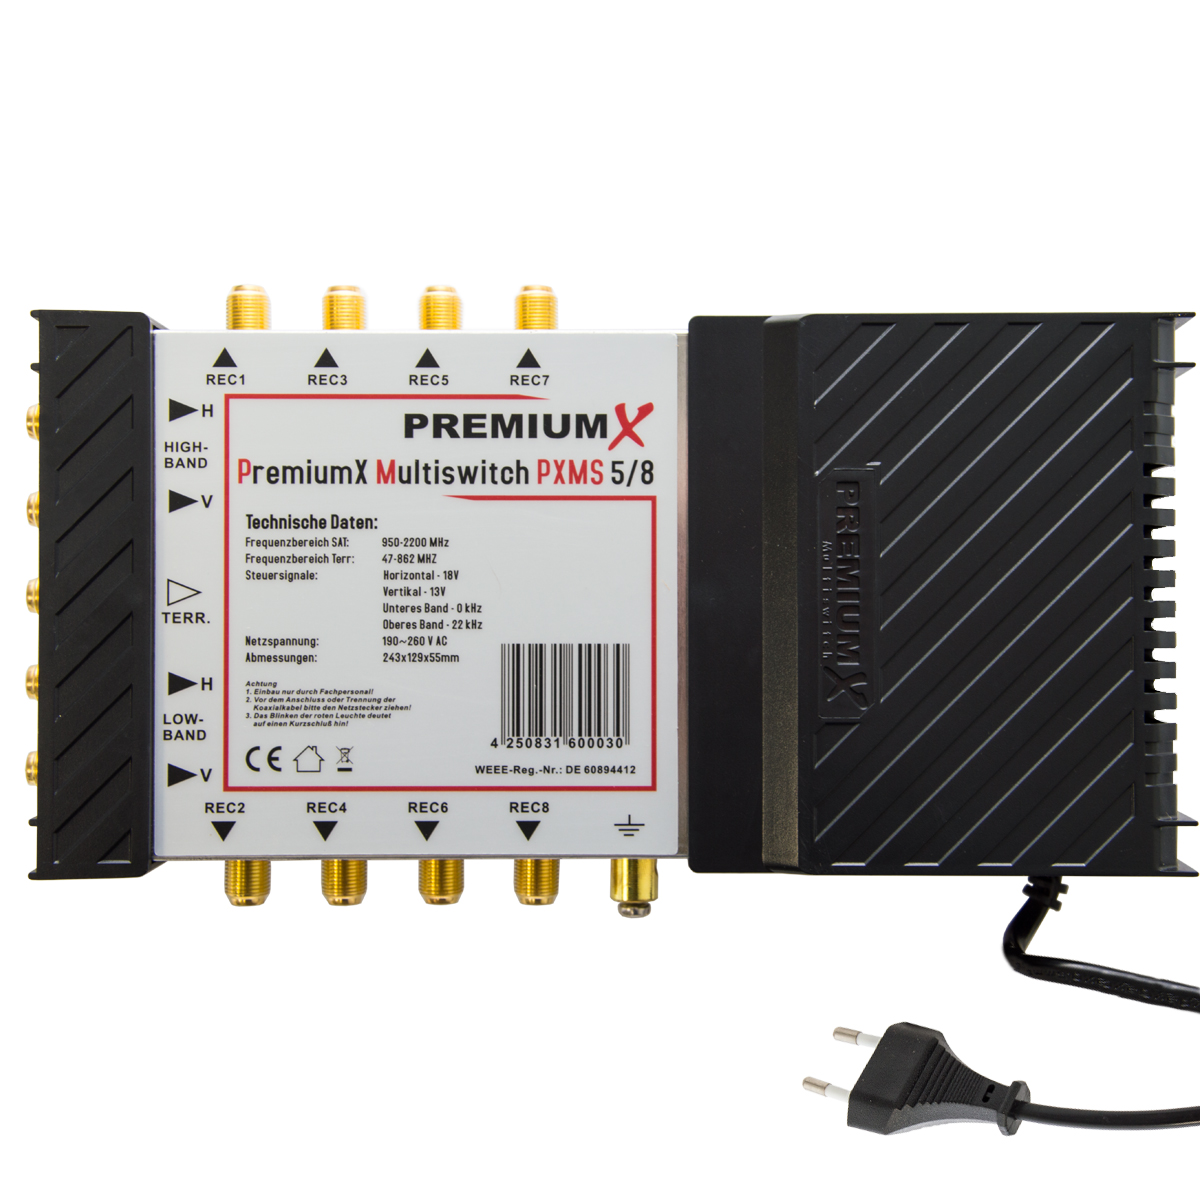 PREMIUMX Multischalter Switch Netzteil Sat-Multischalter LNB mit Quattro 5/8 PXMS 407